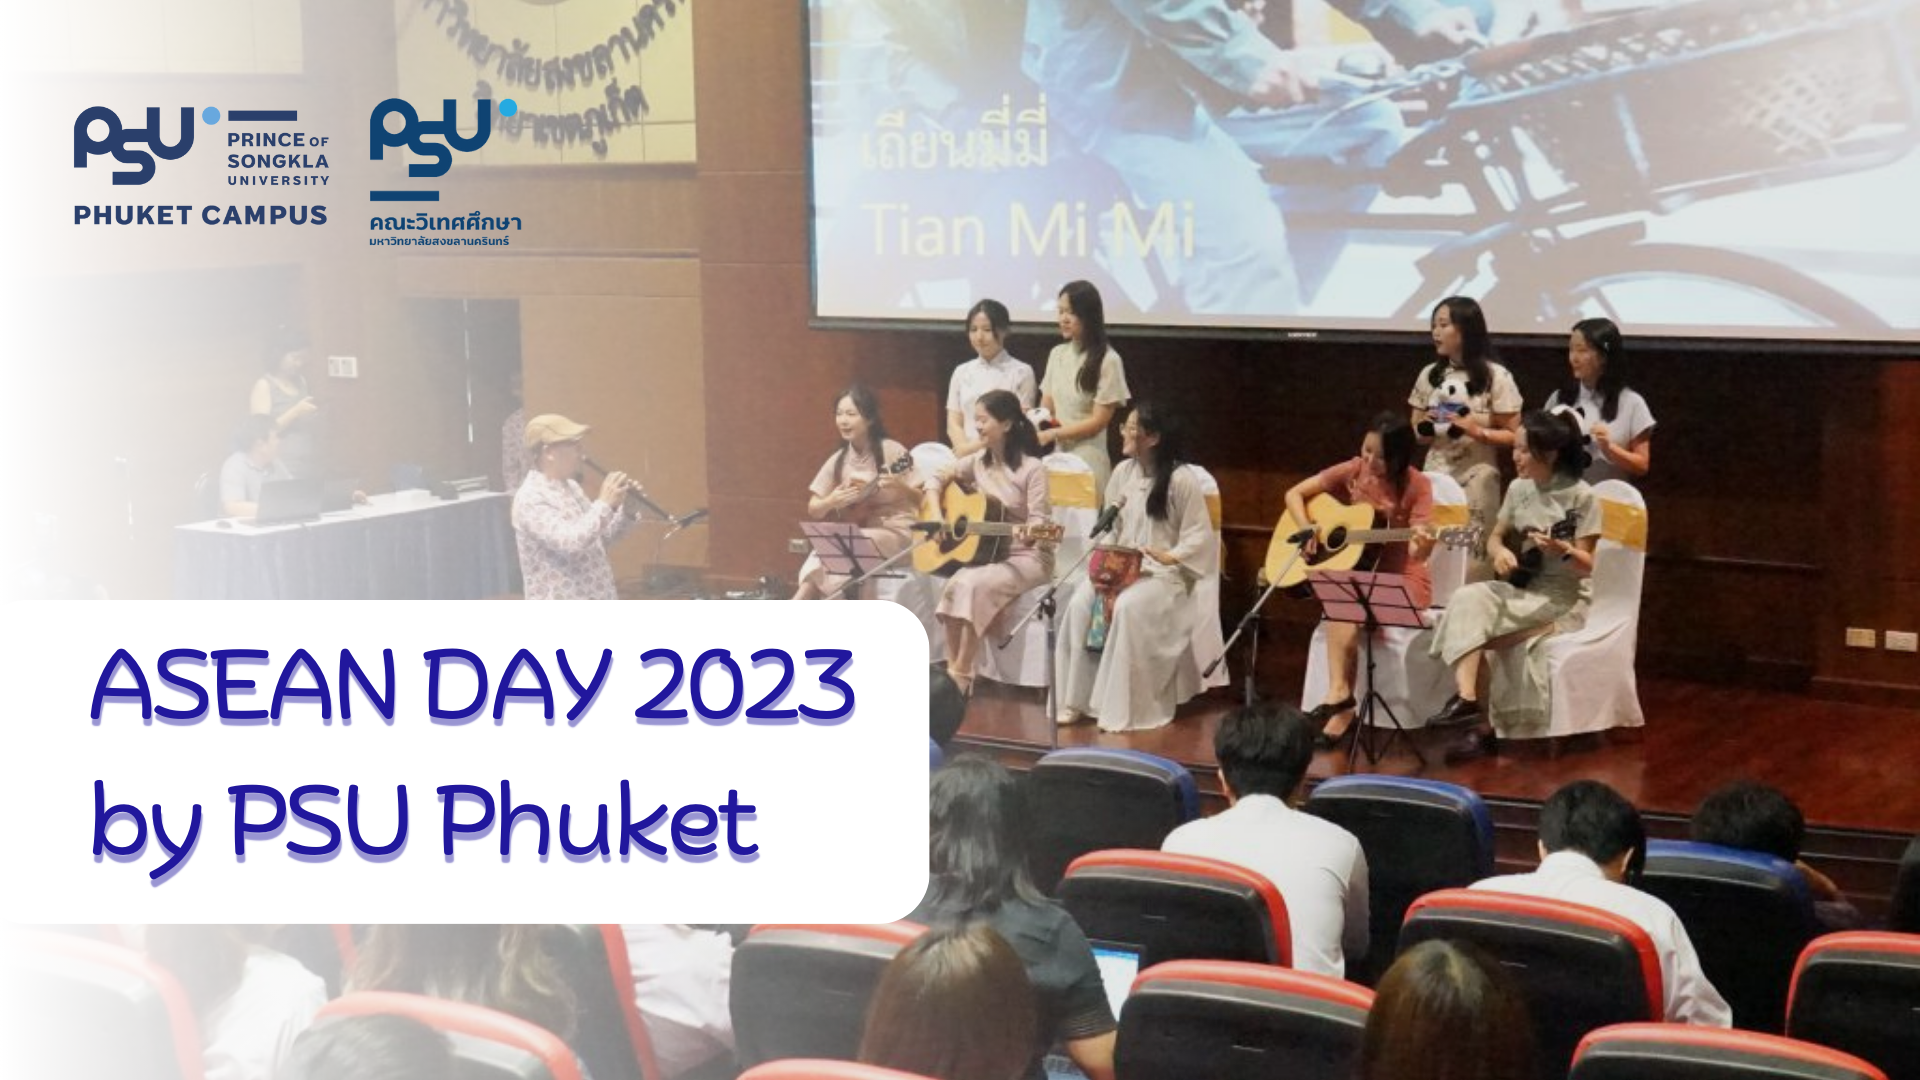 ASEAN DAY 2023 by PSU Phuket